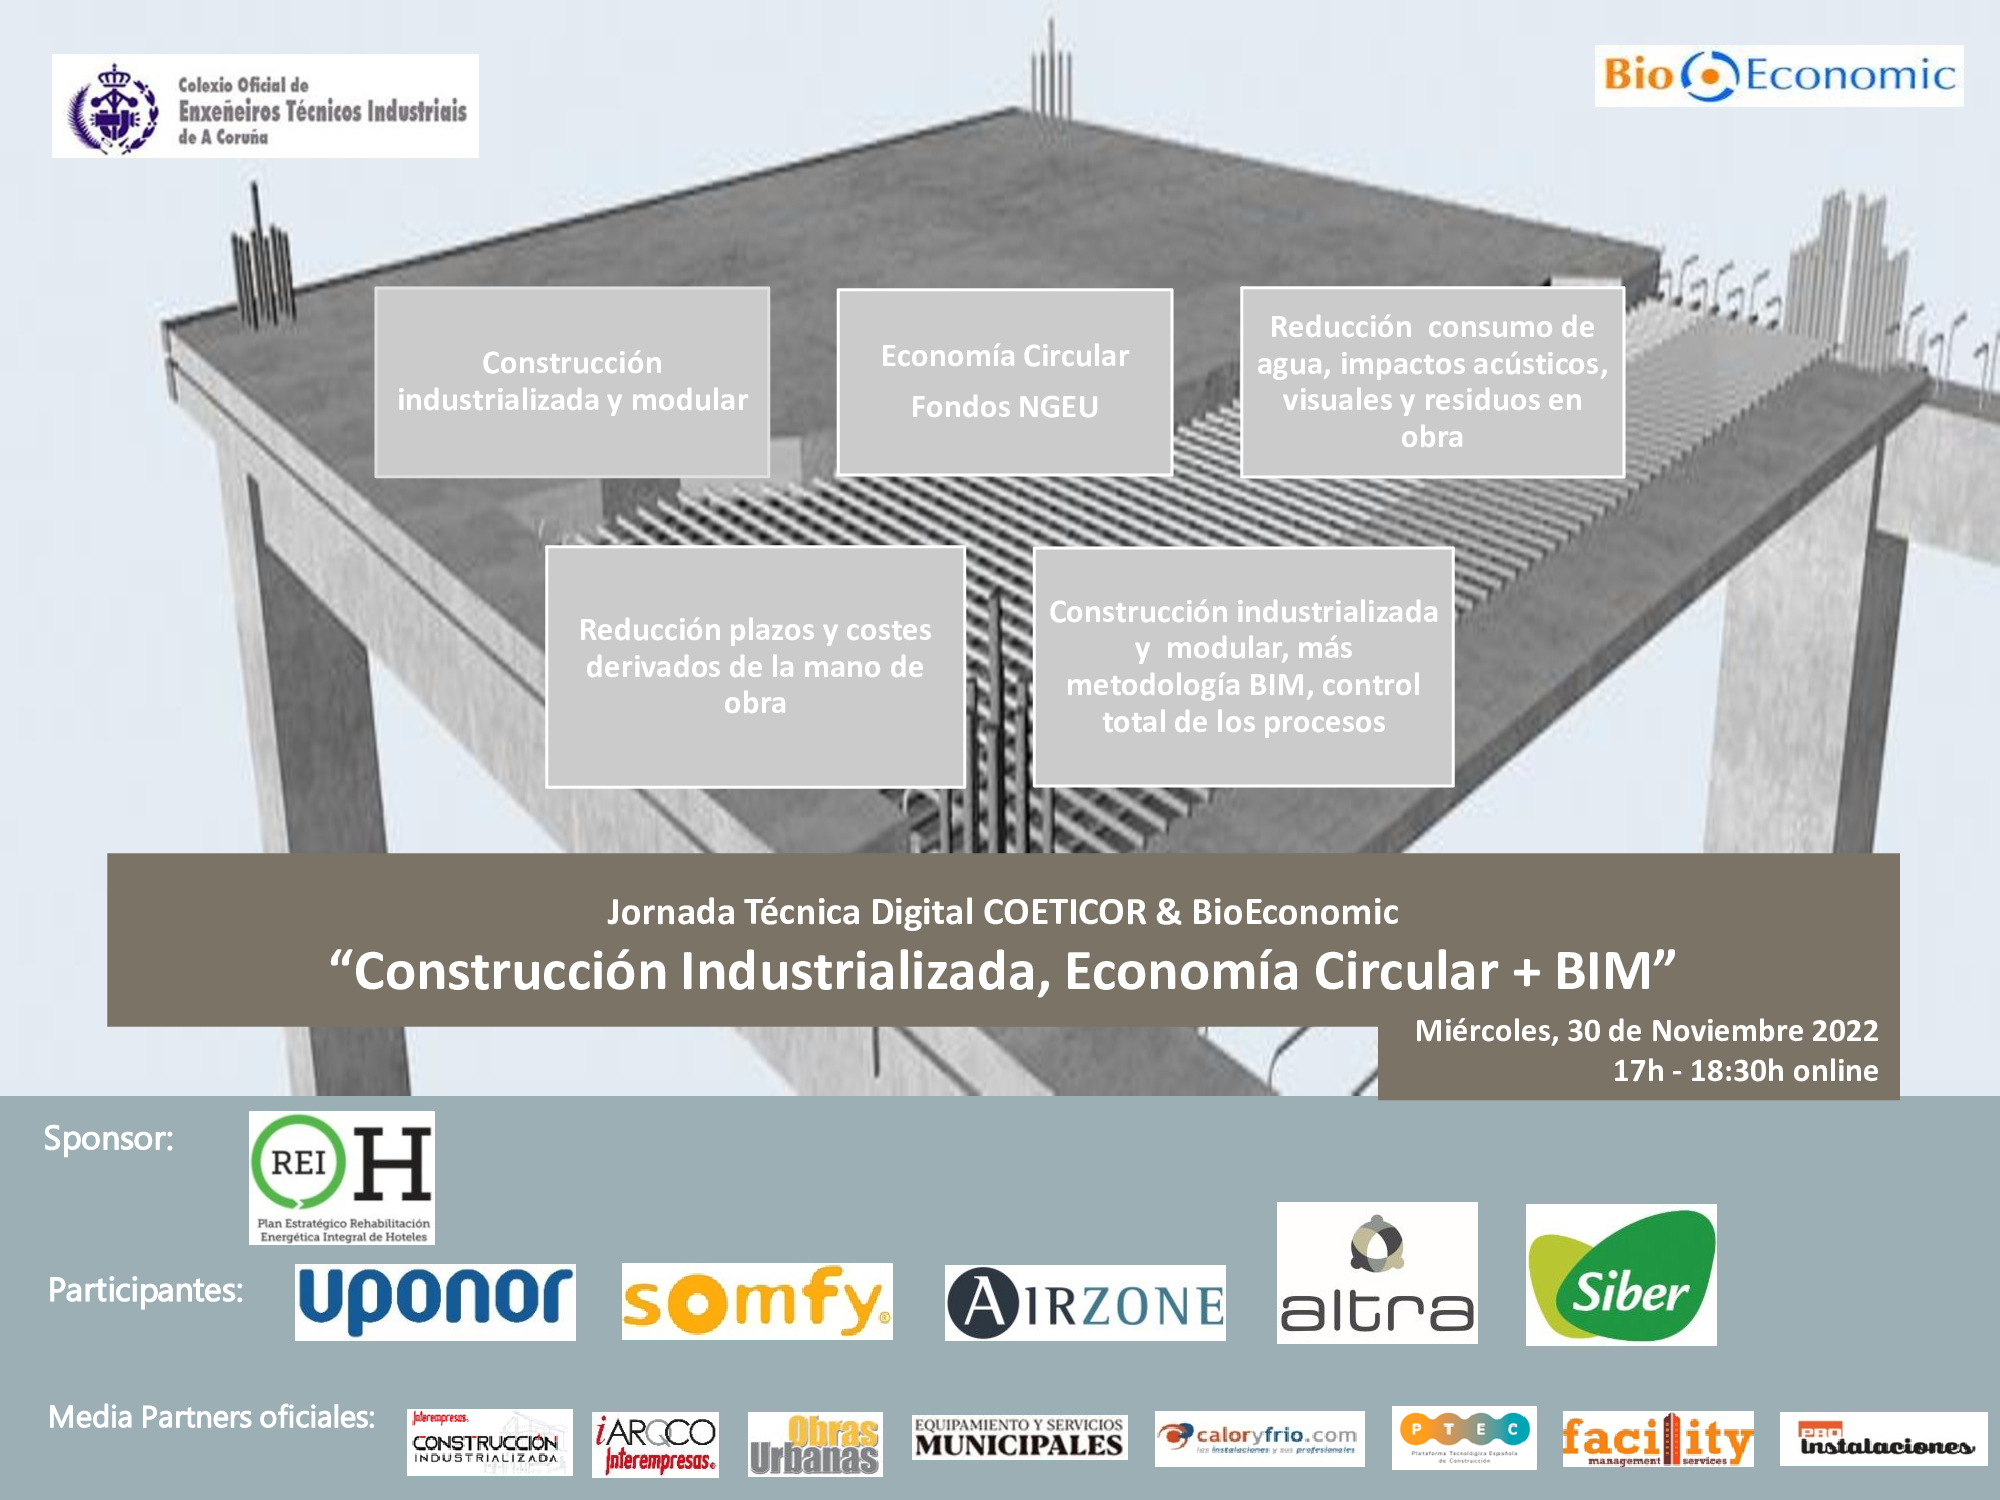 webinar “Construcción Industrializada, Economía Circular, BIM” COETICOR & BioEconomic